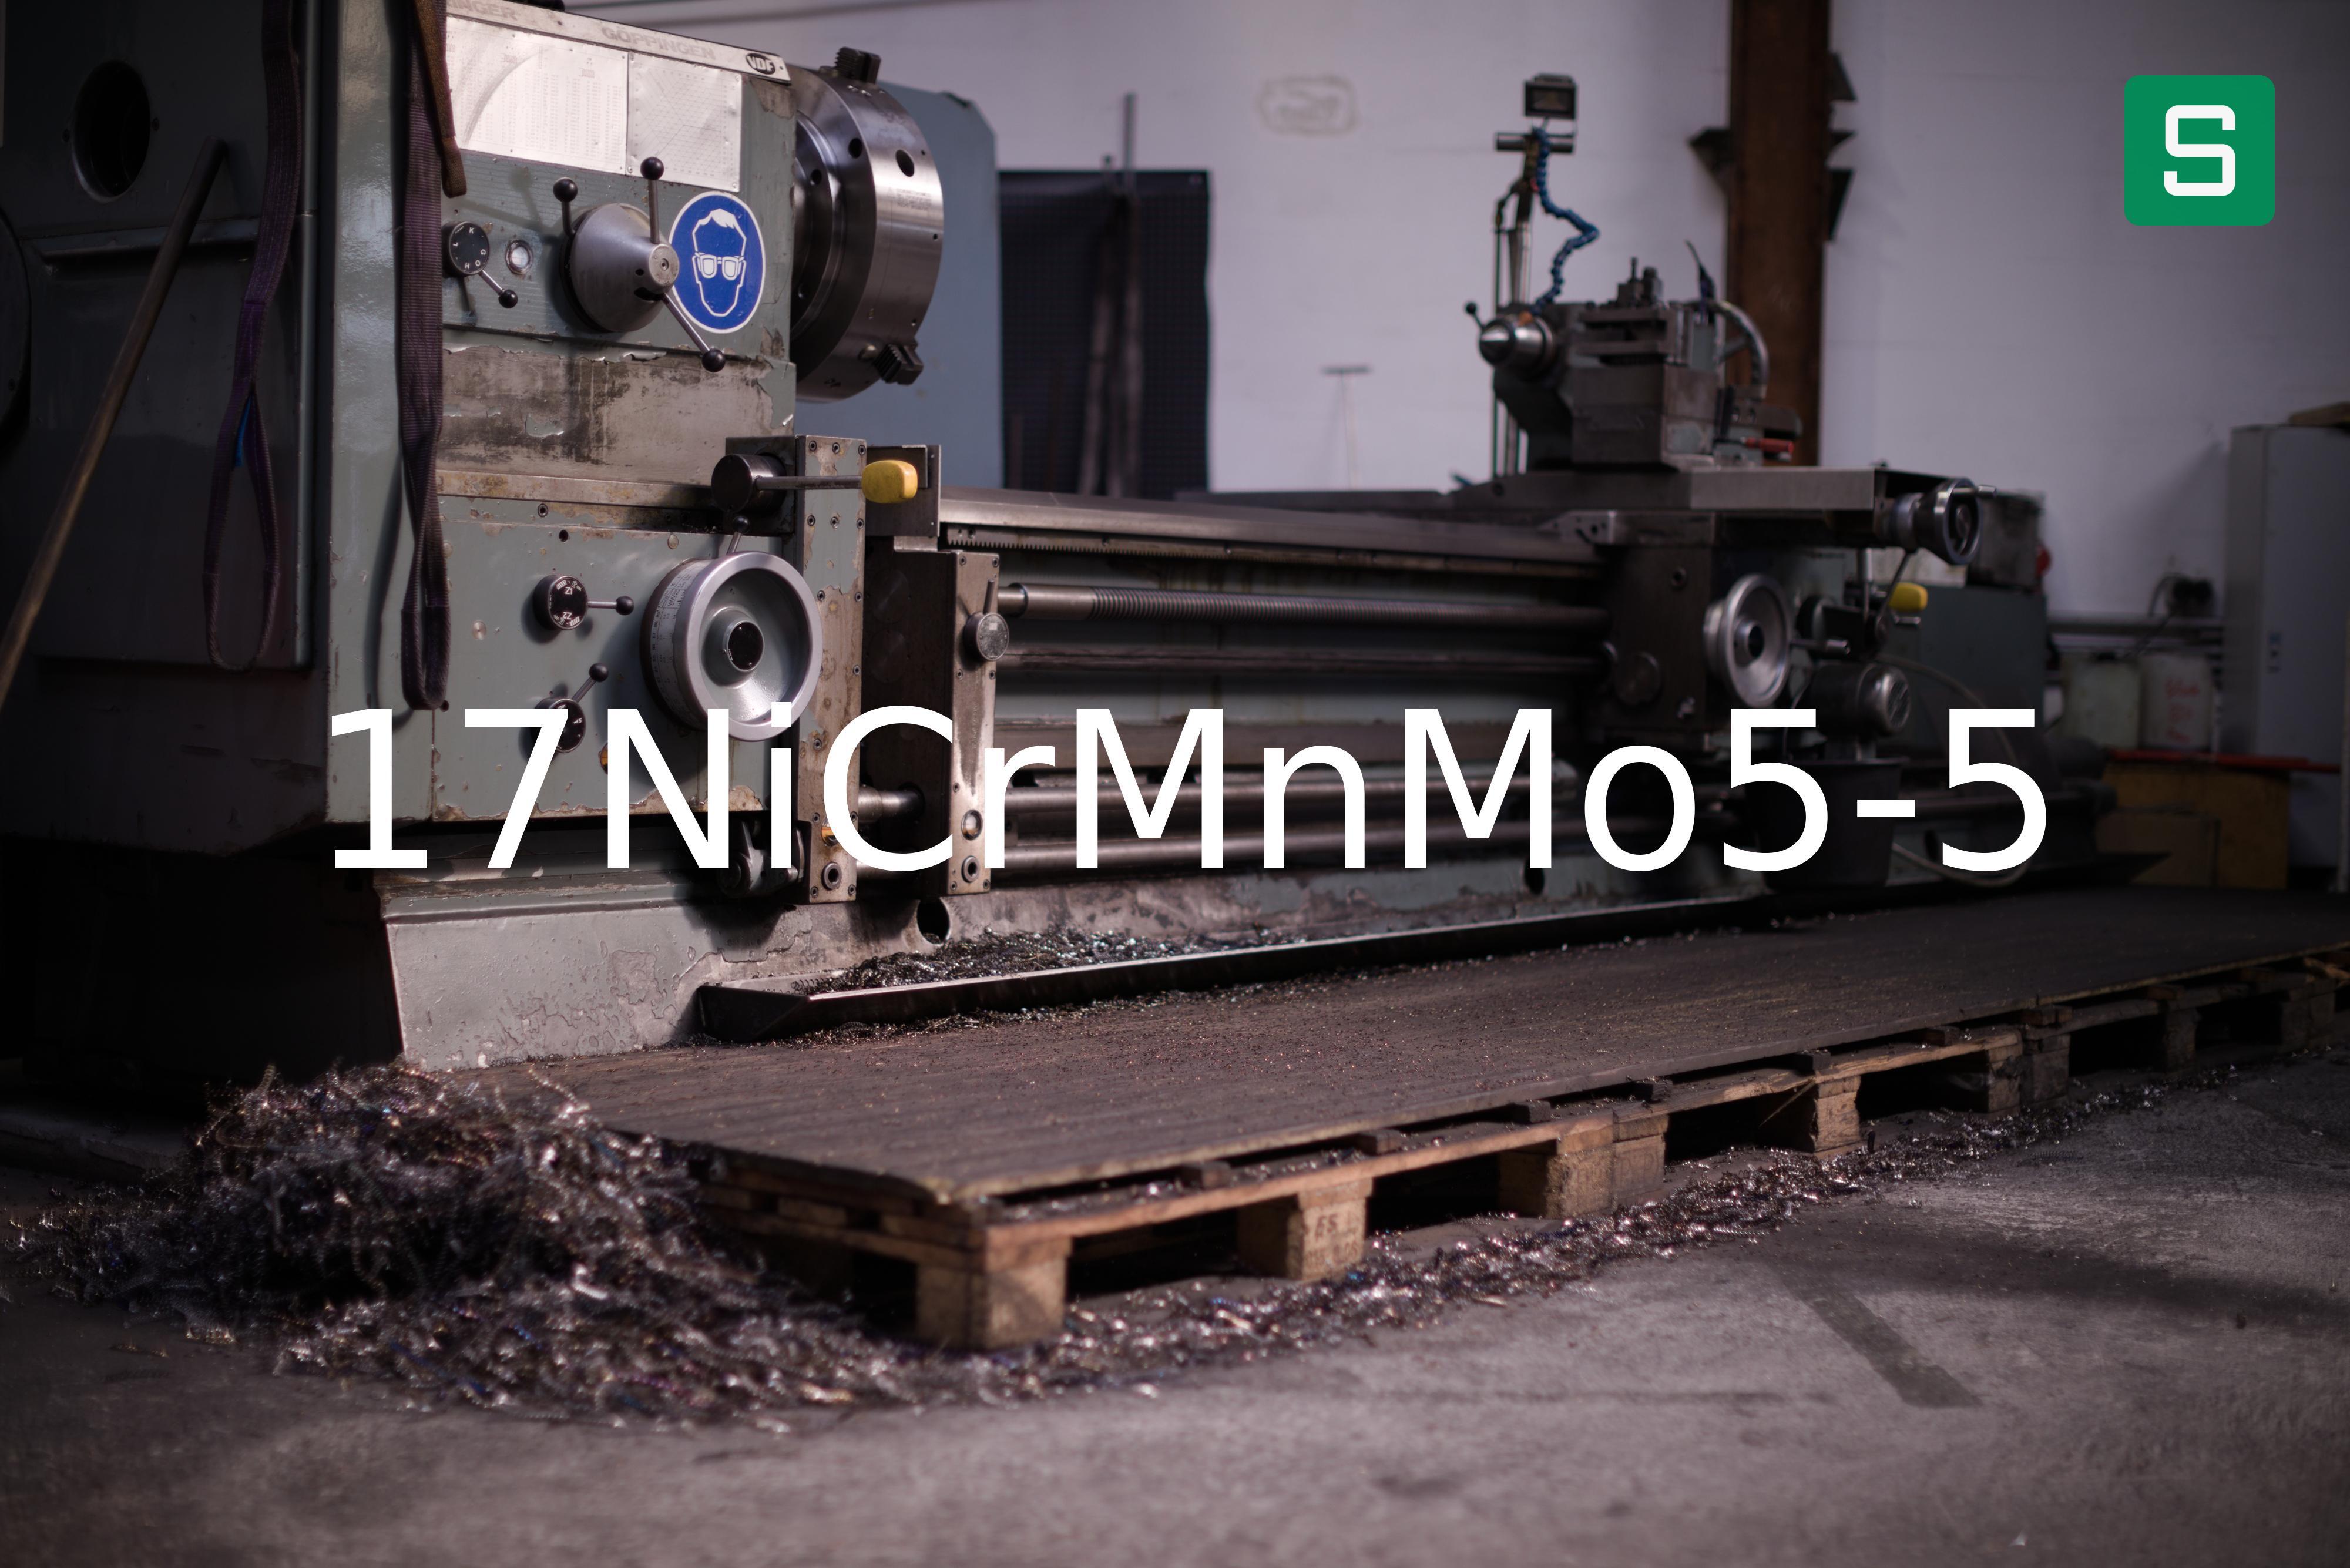 Steel Material: 17NiCrMnMo5-5